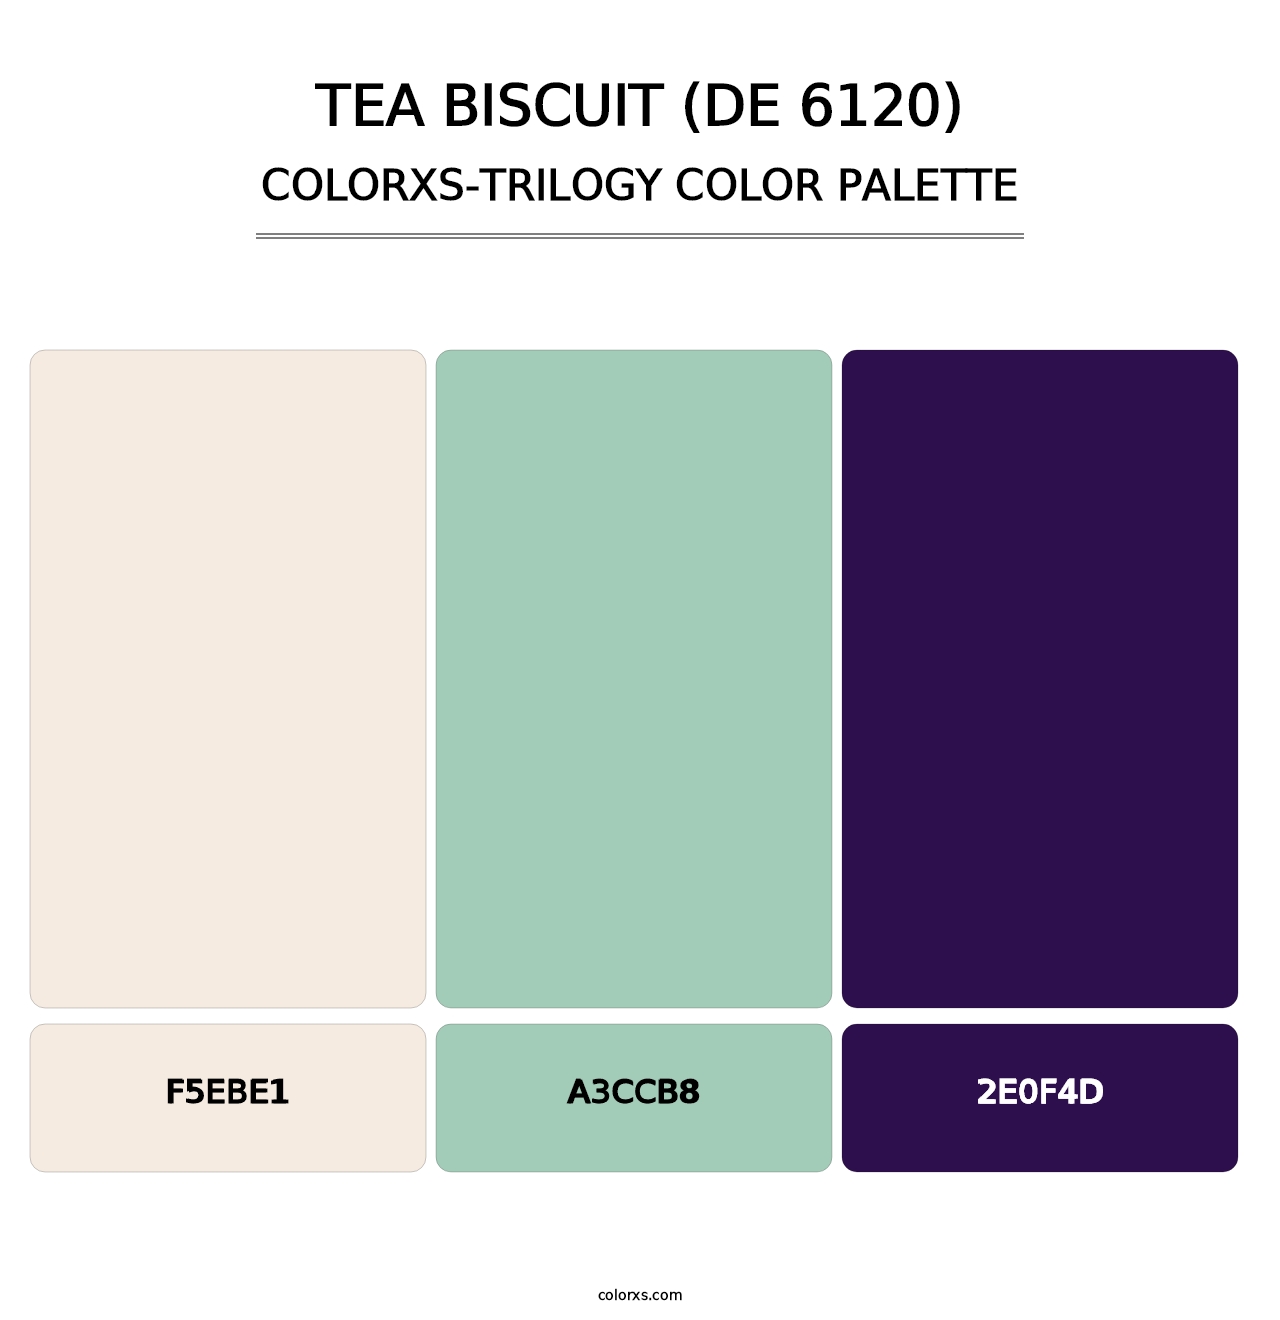 Tea Biscuit (DE 6120) - Colorxs Trilogy Palette